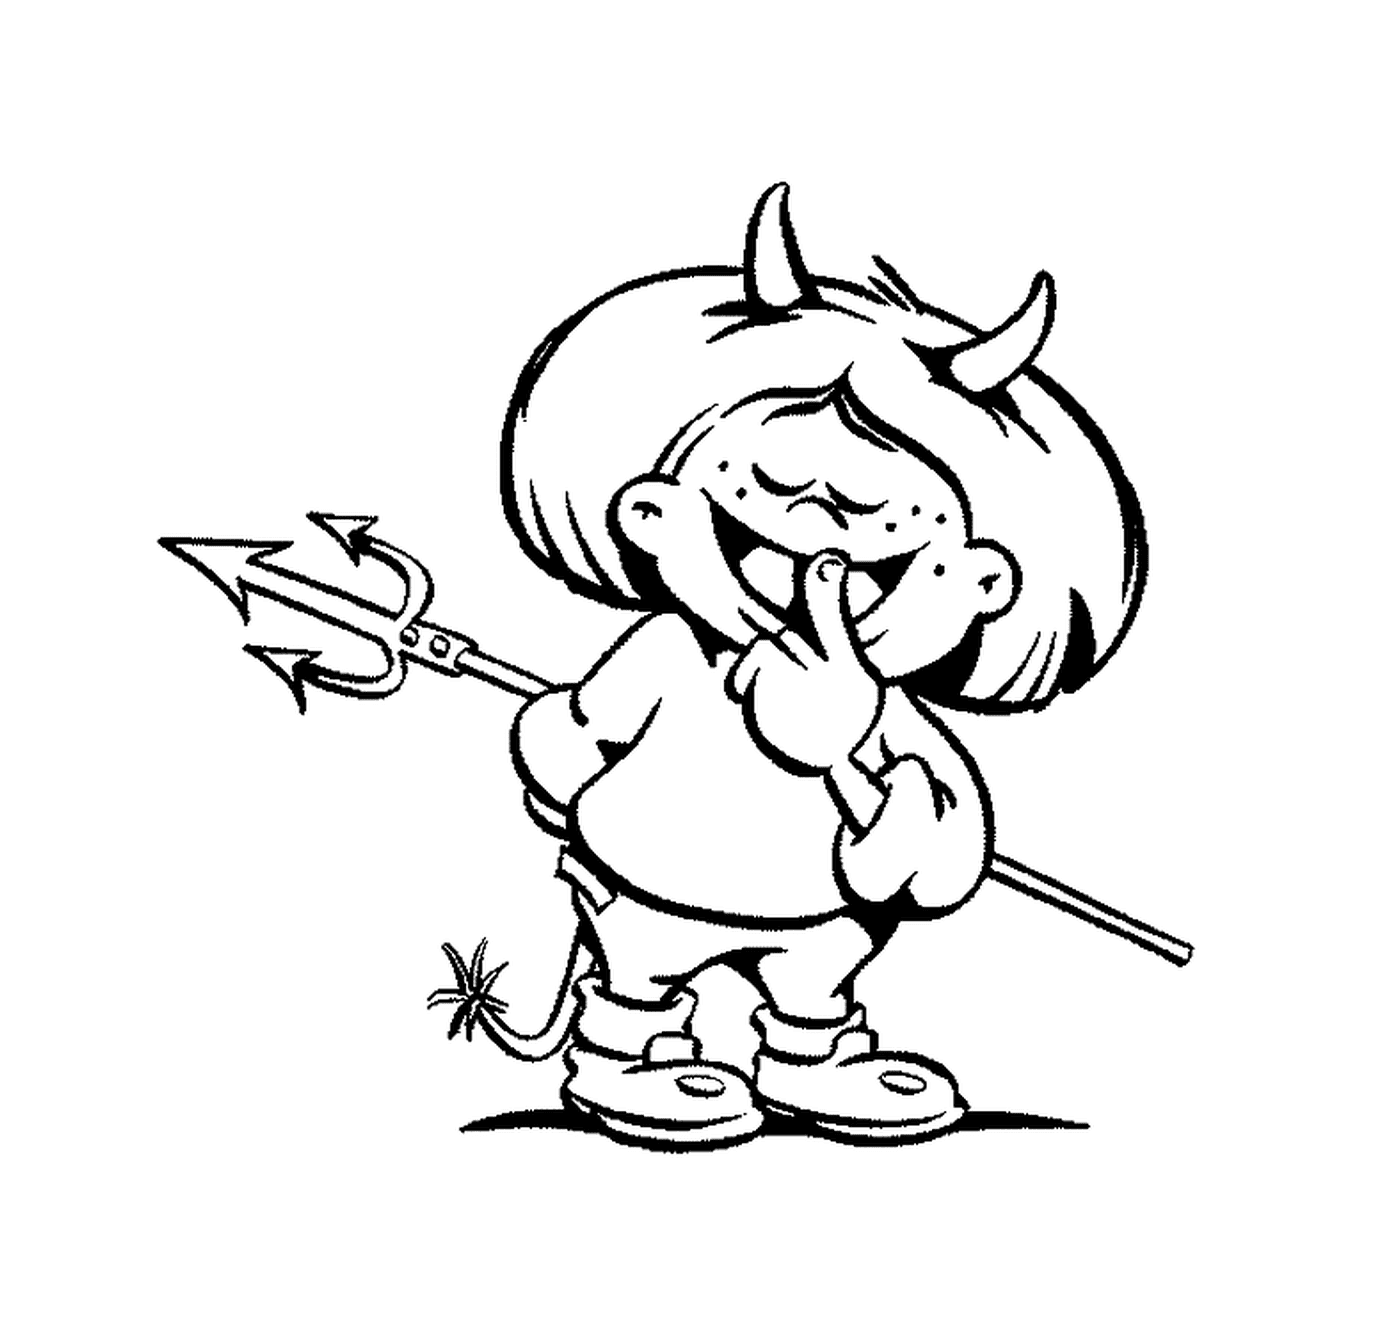  Злая маленькая девочка с рогами и стрелой 